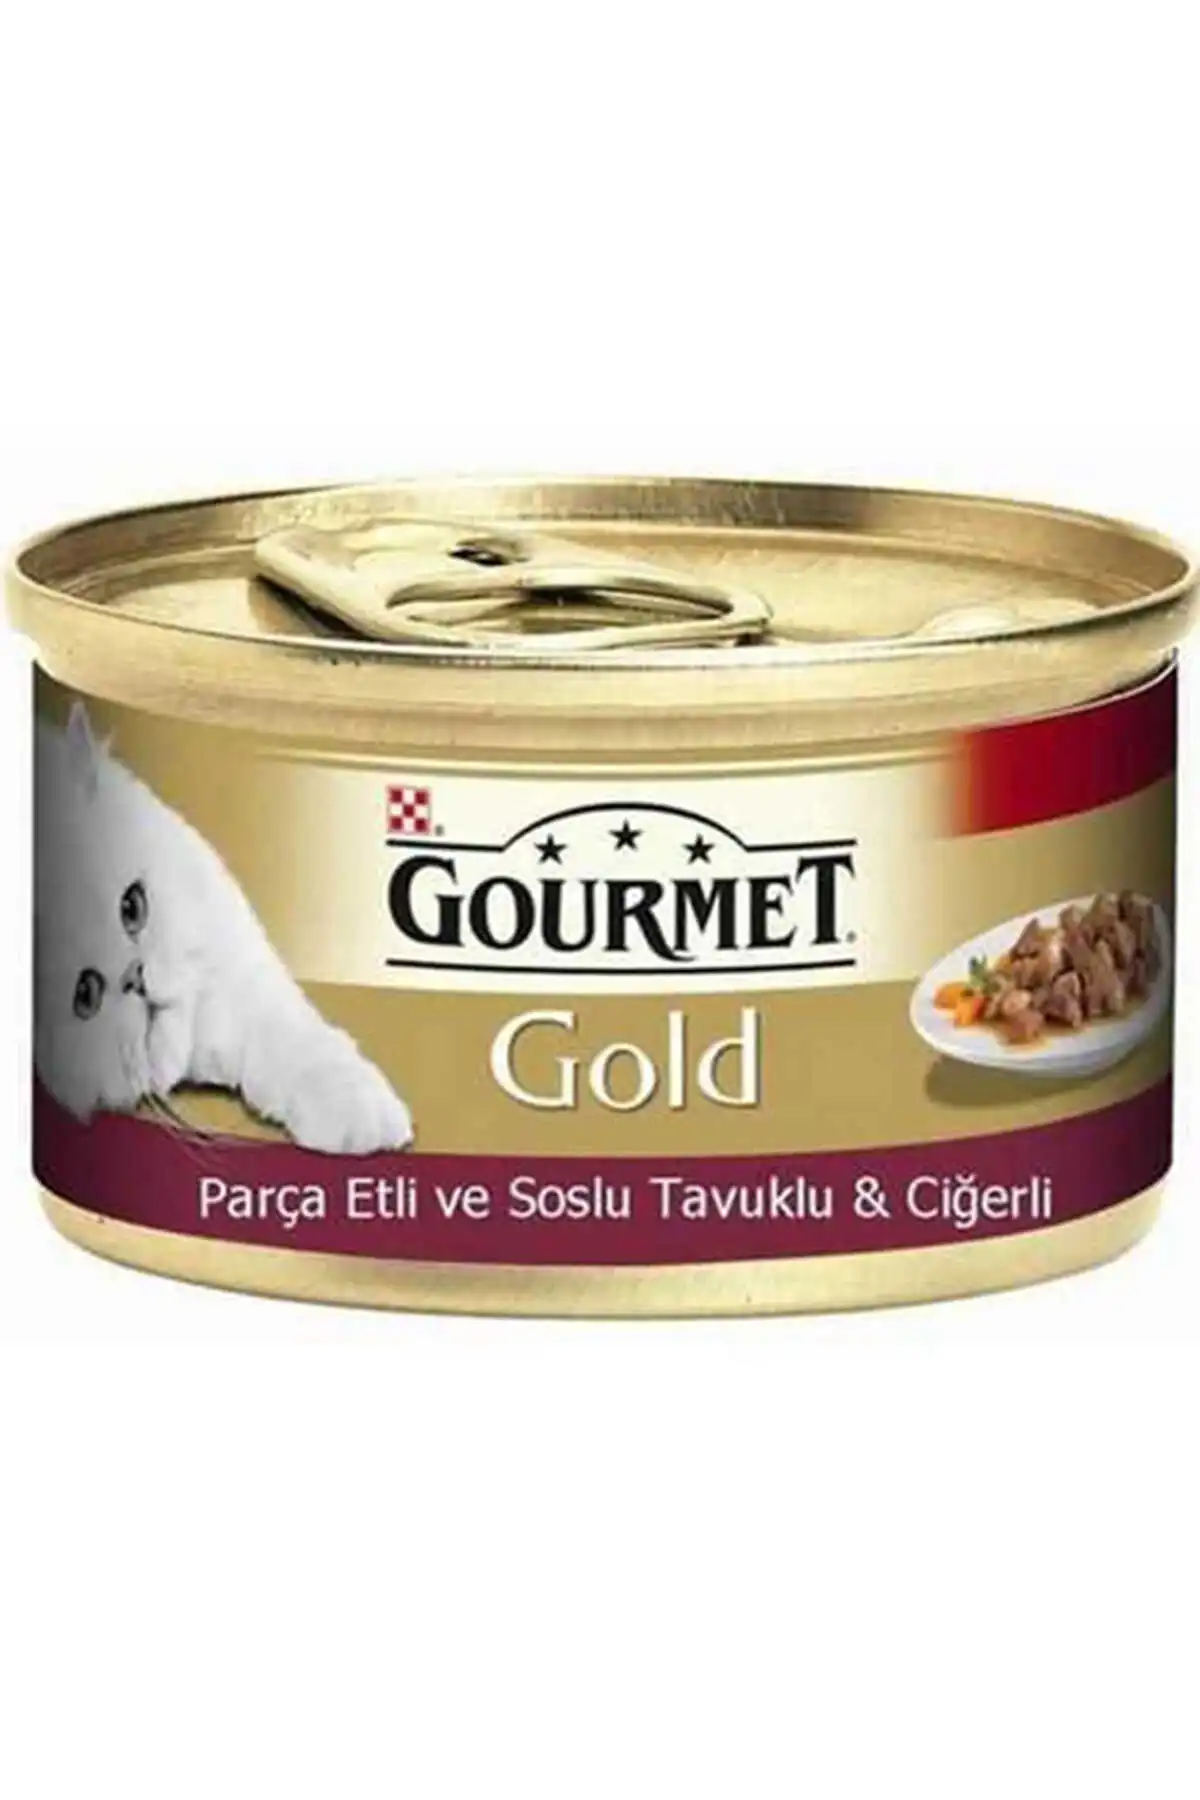 GOURMET - Gourmet Gold Tavuk ve Ciğer Parça Et Soslu Yetişkin Kedi Konservesi 85gr